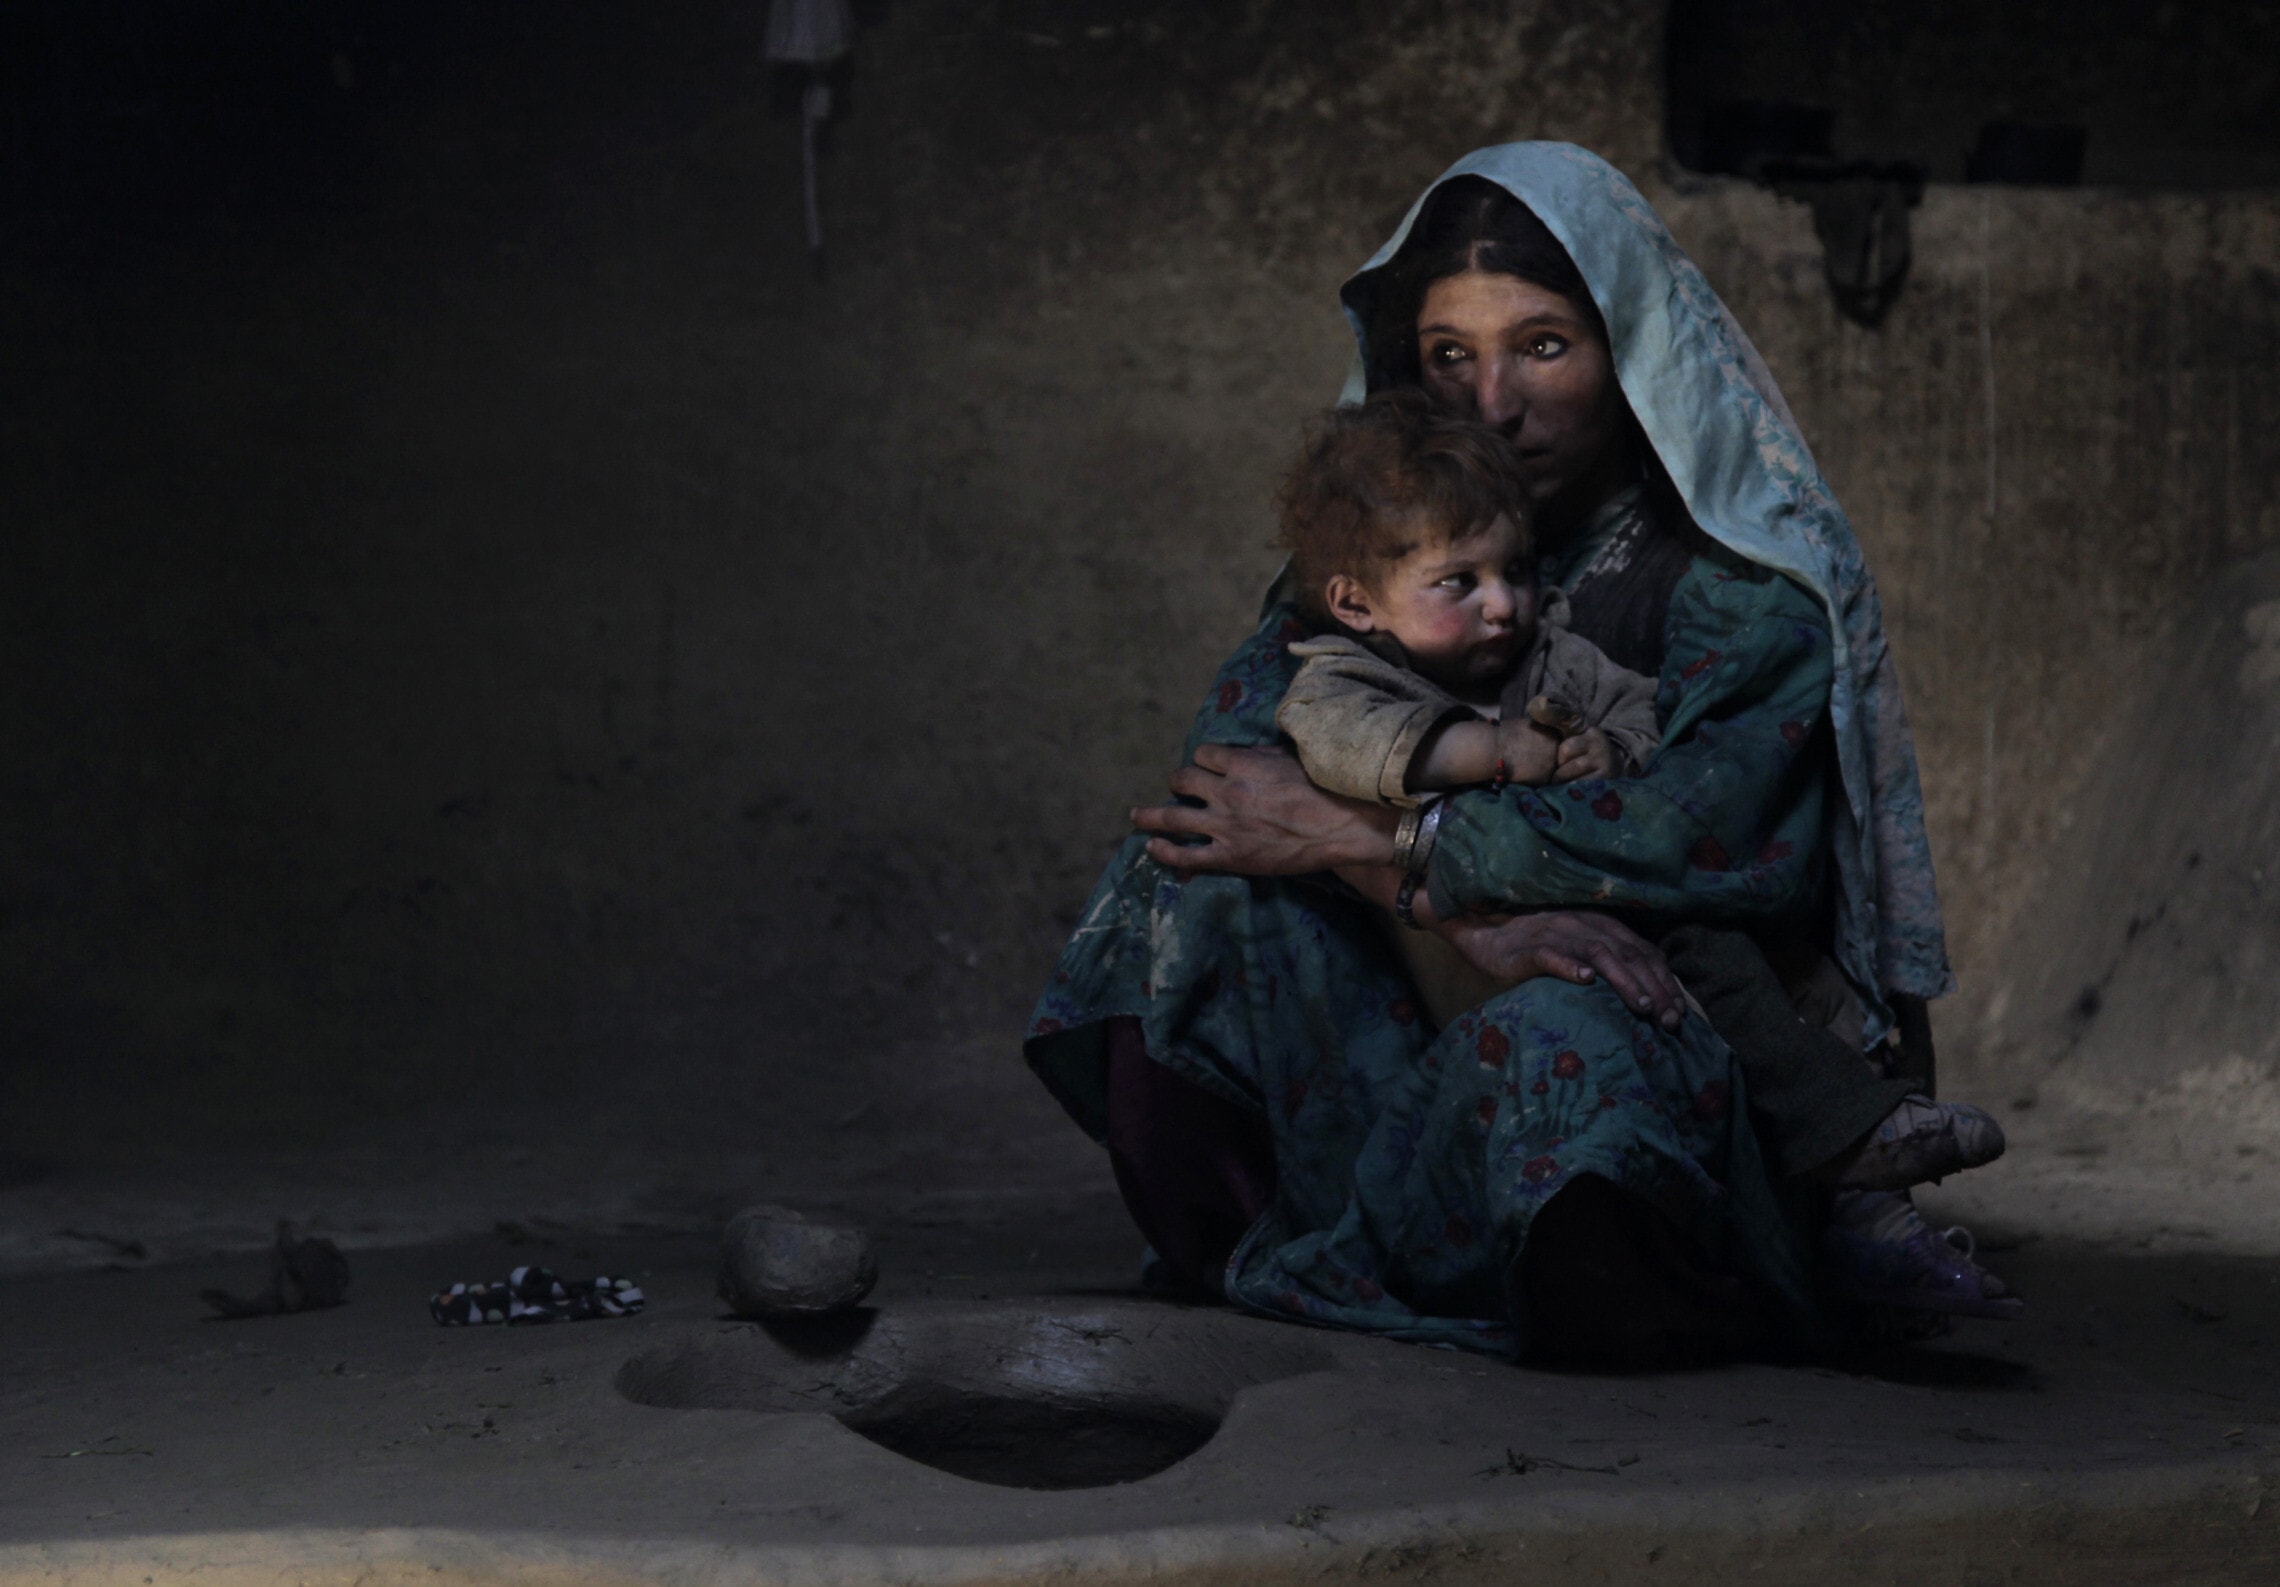 אפגנית כפרית מרגיעה את ילדה בן השנה אחרי עישון אופיום בבוקר עם בני משפחתה, 13 ביולי 2009 (צילום: AP Photo/Julie Jacobson)